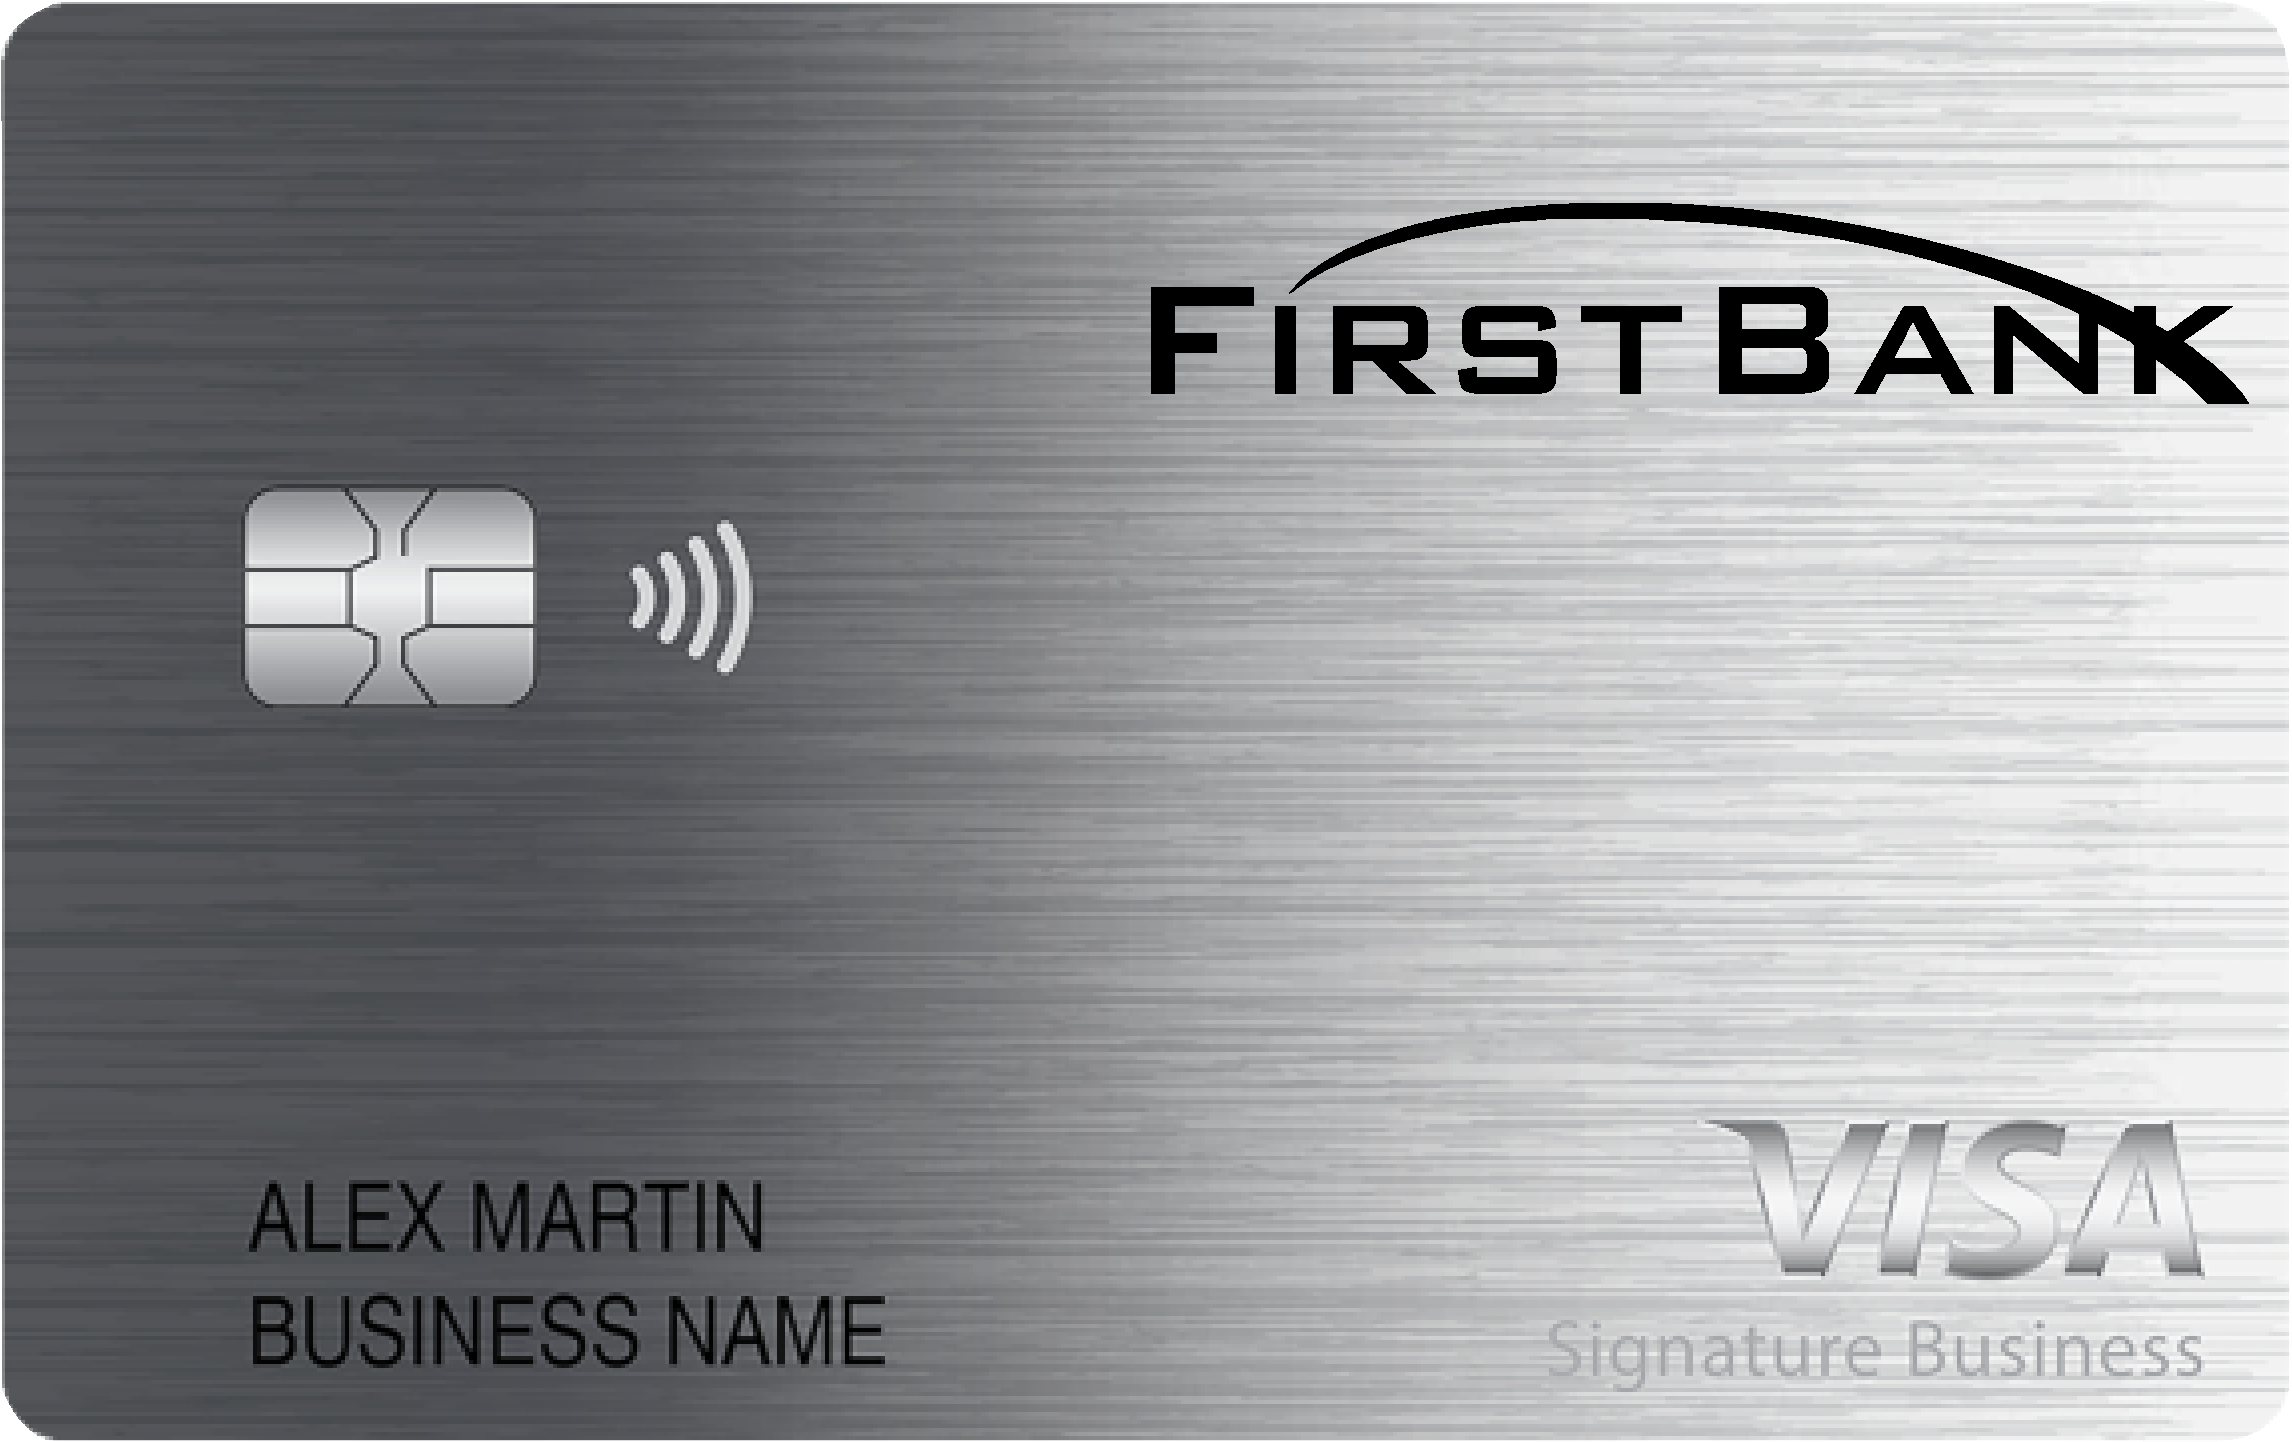 First Bank Smart Business Rewards Card